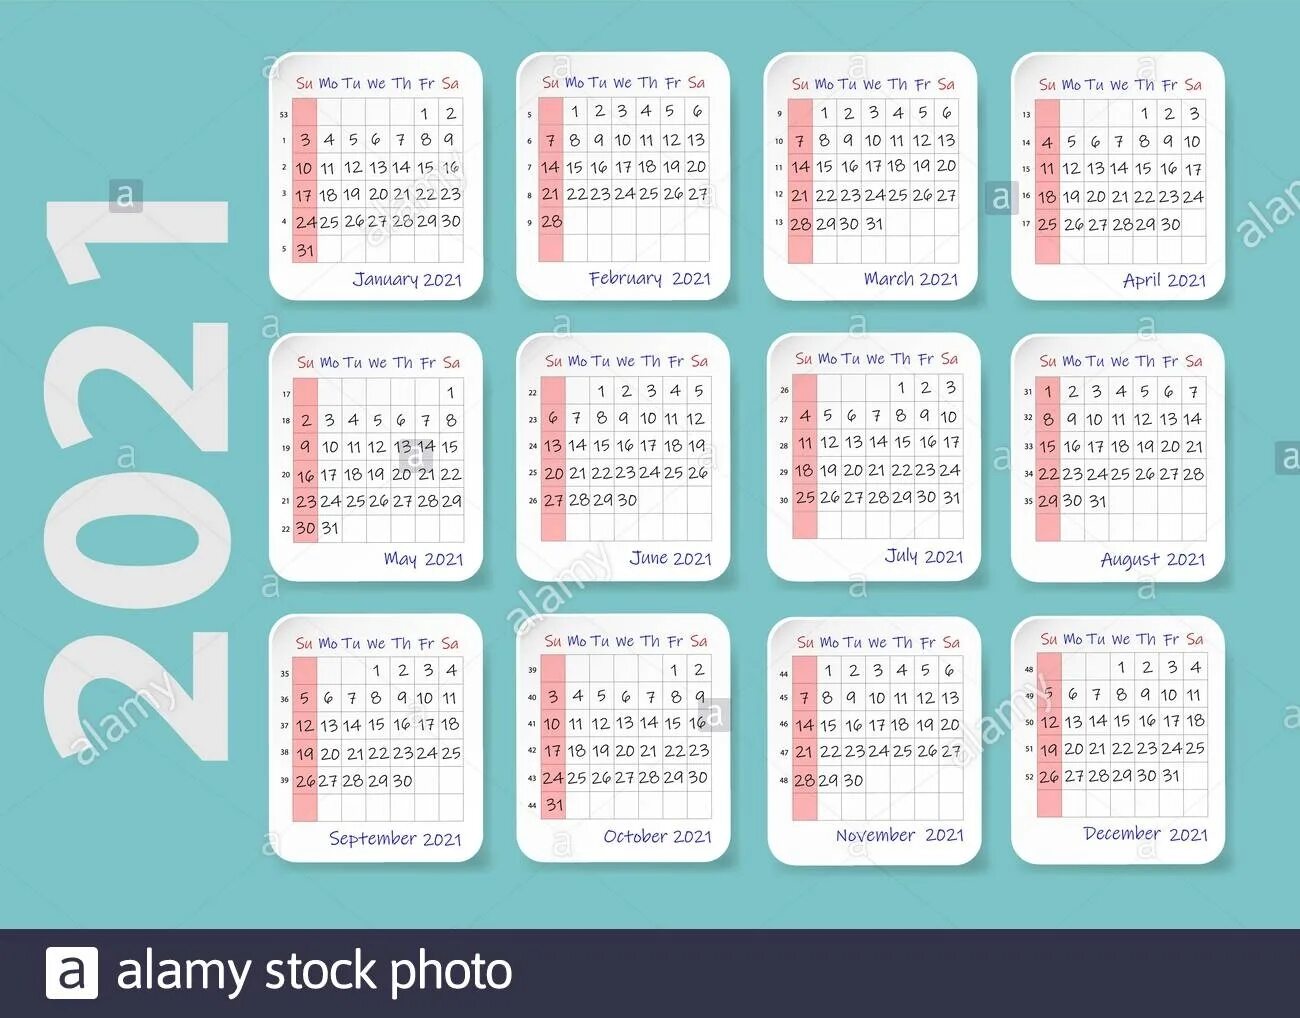 Календарь с номерами недель 2021. Номера недель 2021 год. Количество недель в 2021 году. Нумерация недель в 2021 году.